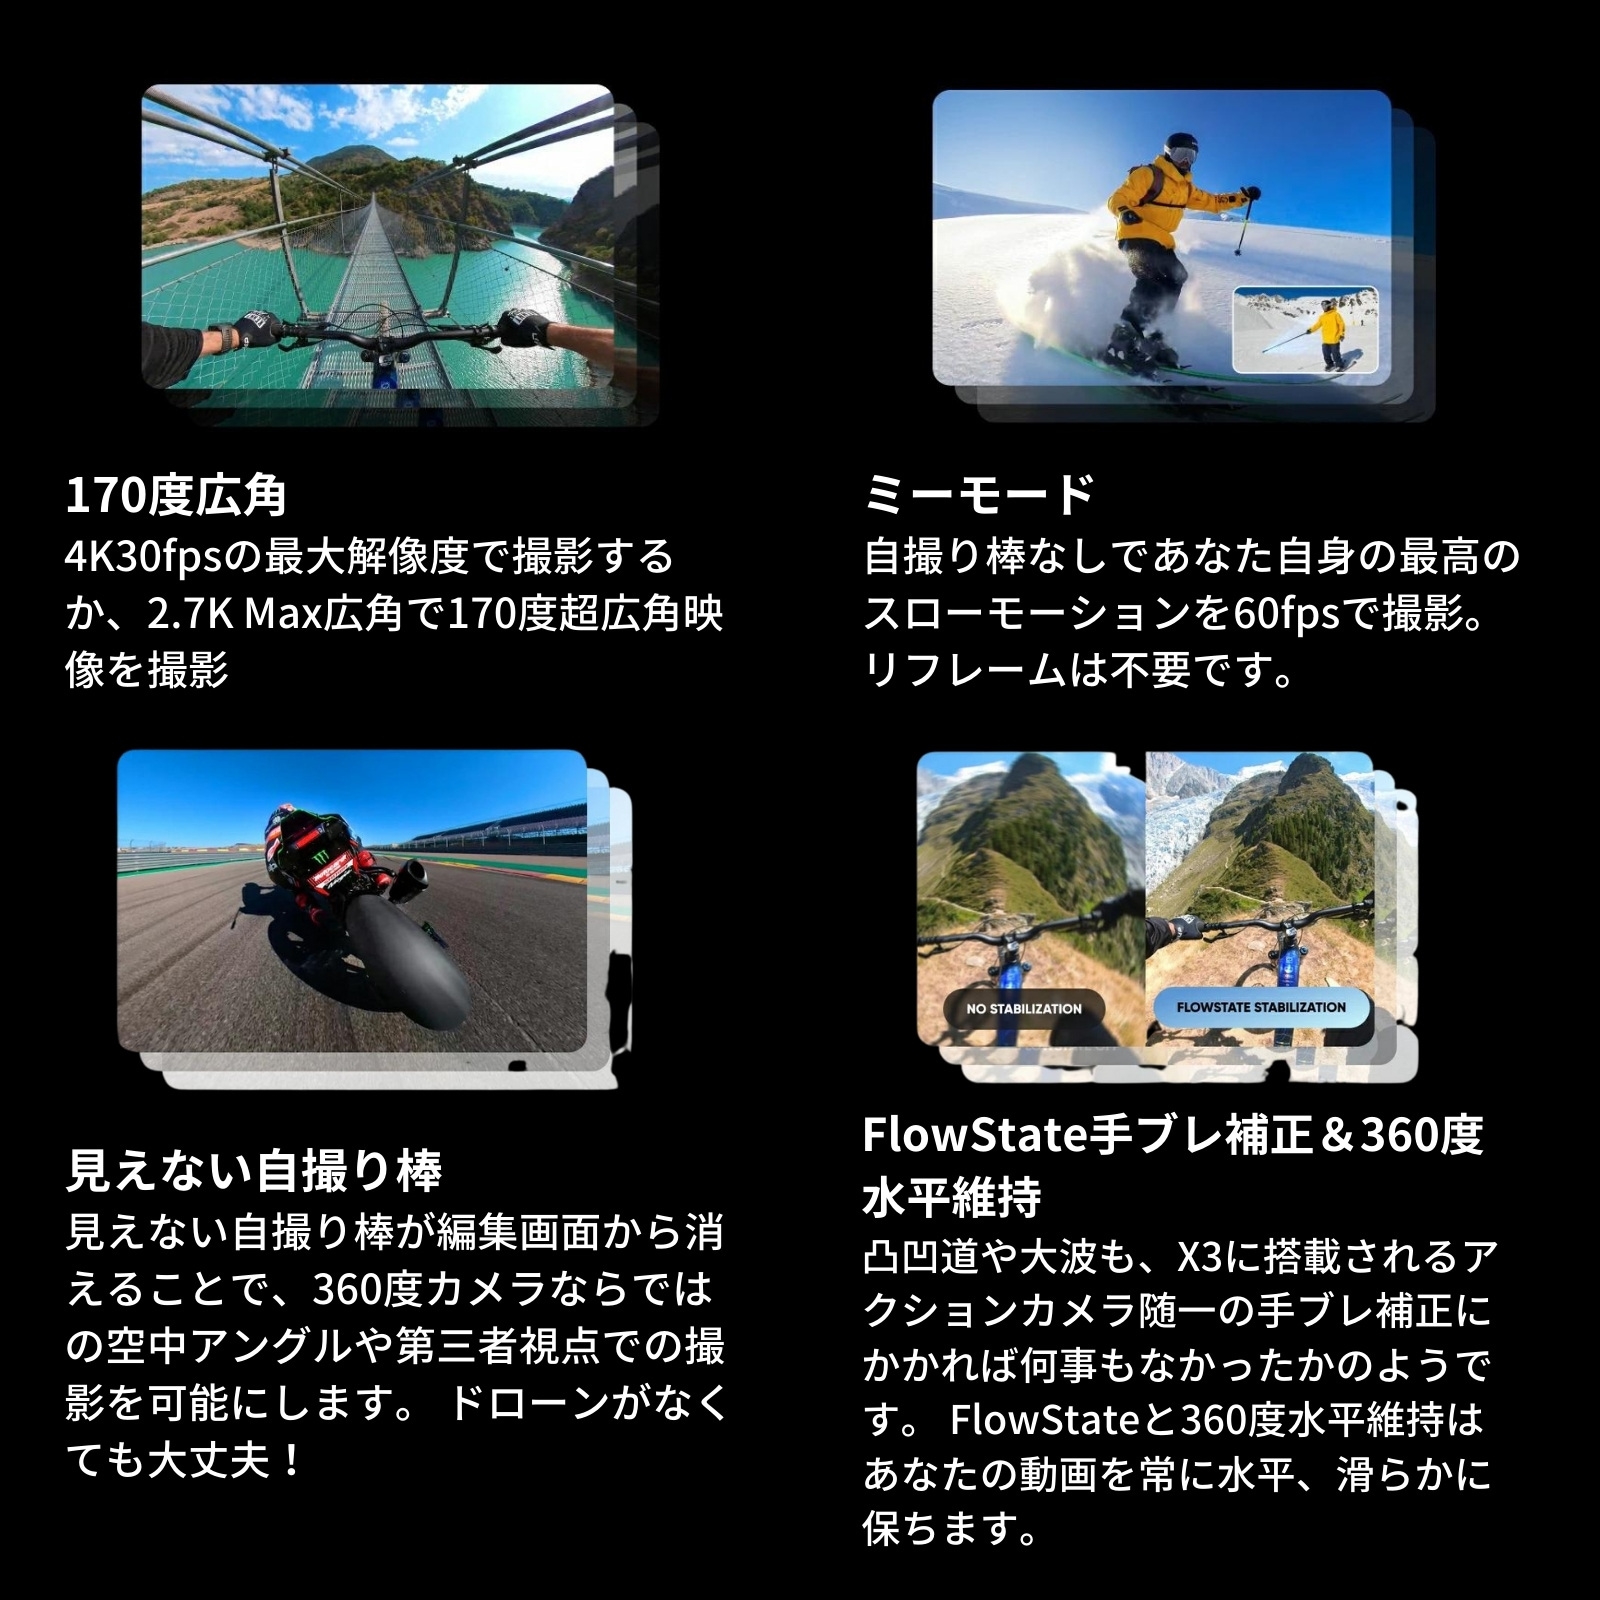 Insta360 X3 バレットタイムキット 正規代理店 インスタ 360 バレットタイム撮影キット 64GBメモリカード レンズキャップ アクションカメラ  360度カメラ アクションカメラ,Insta360 JAPAN CAMERA (ジャパンカメラ)